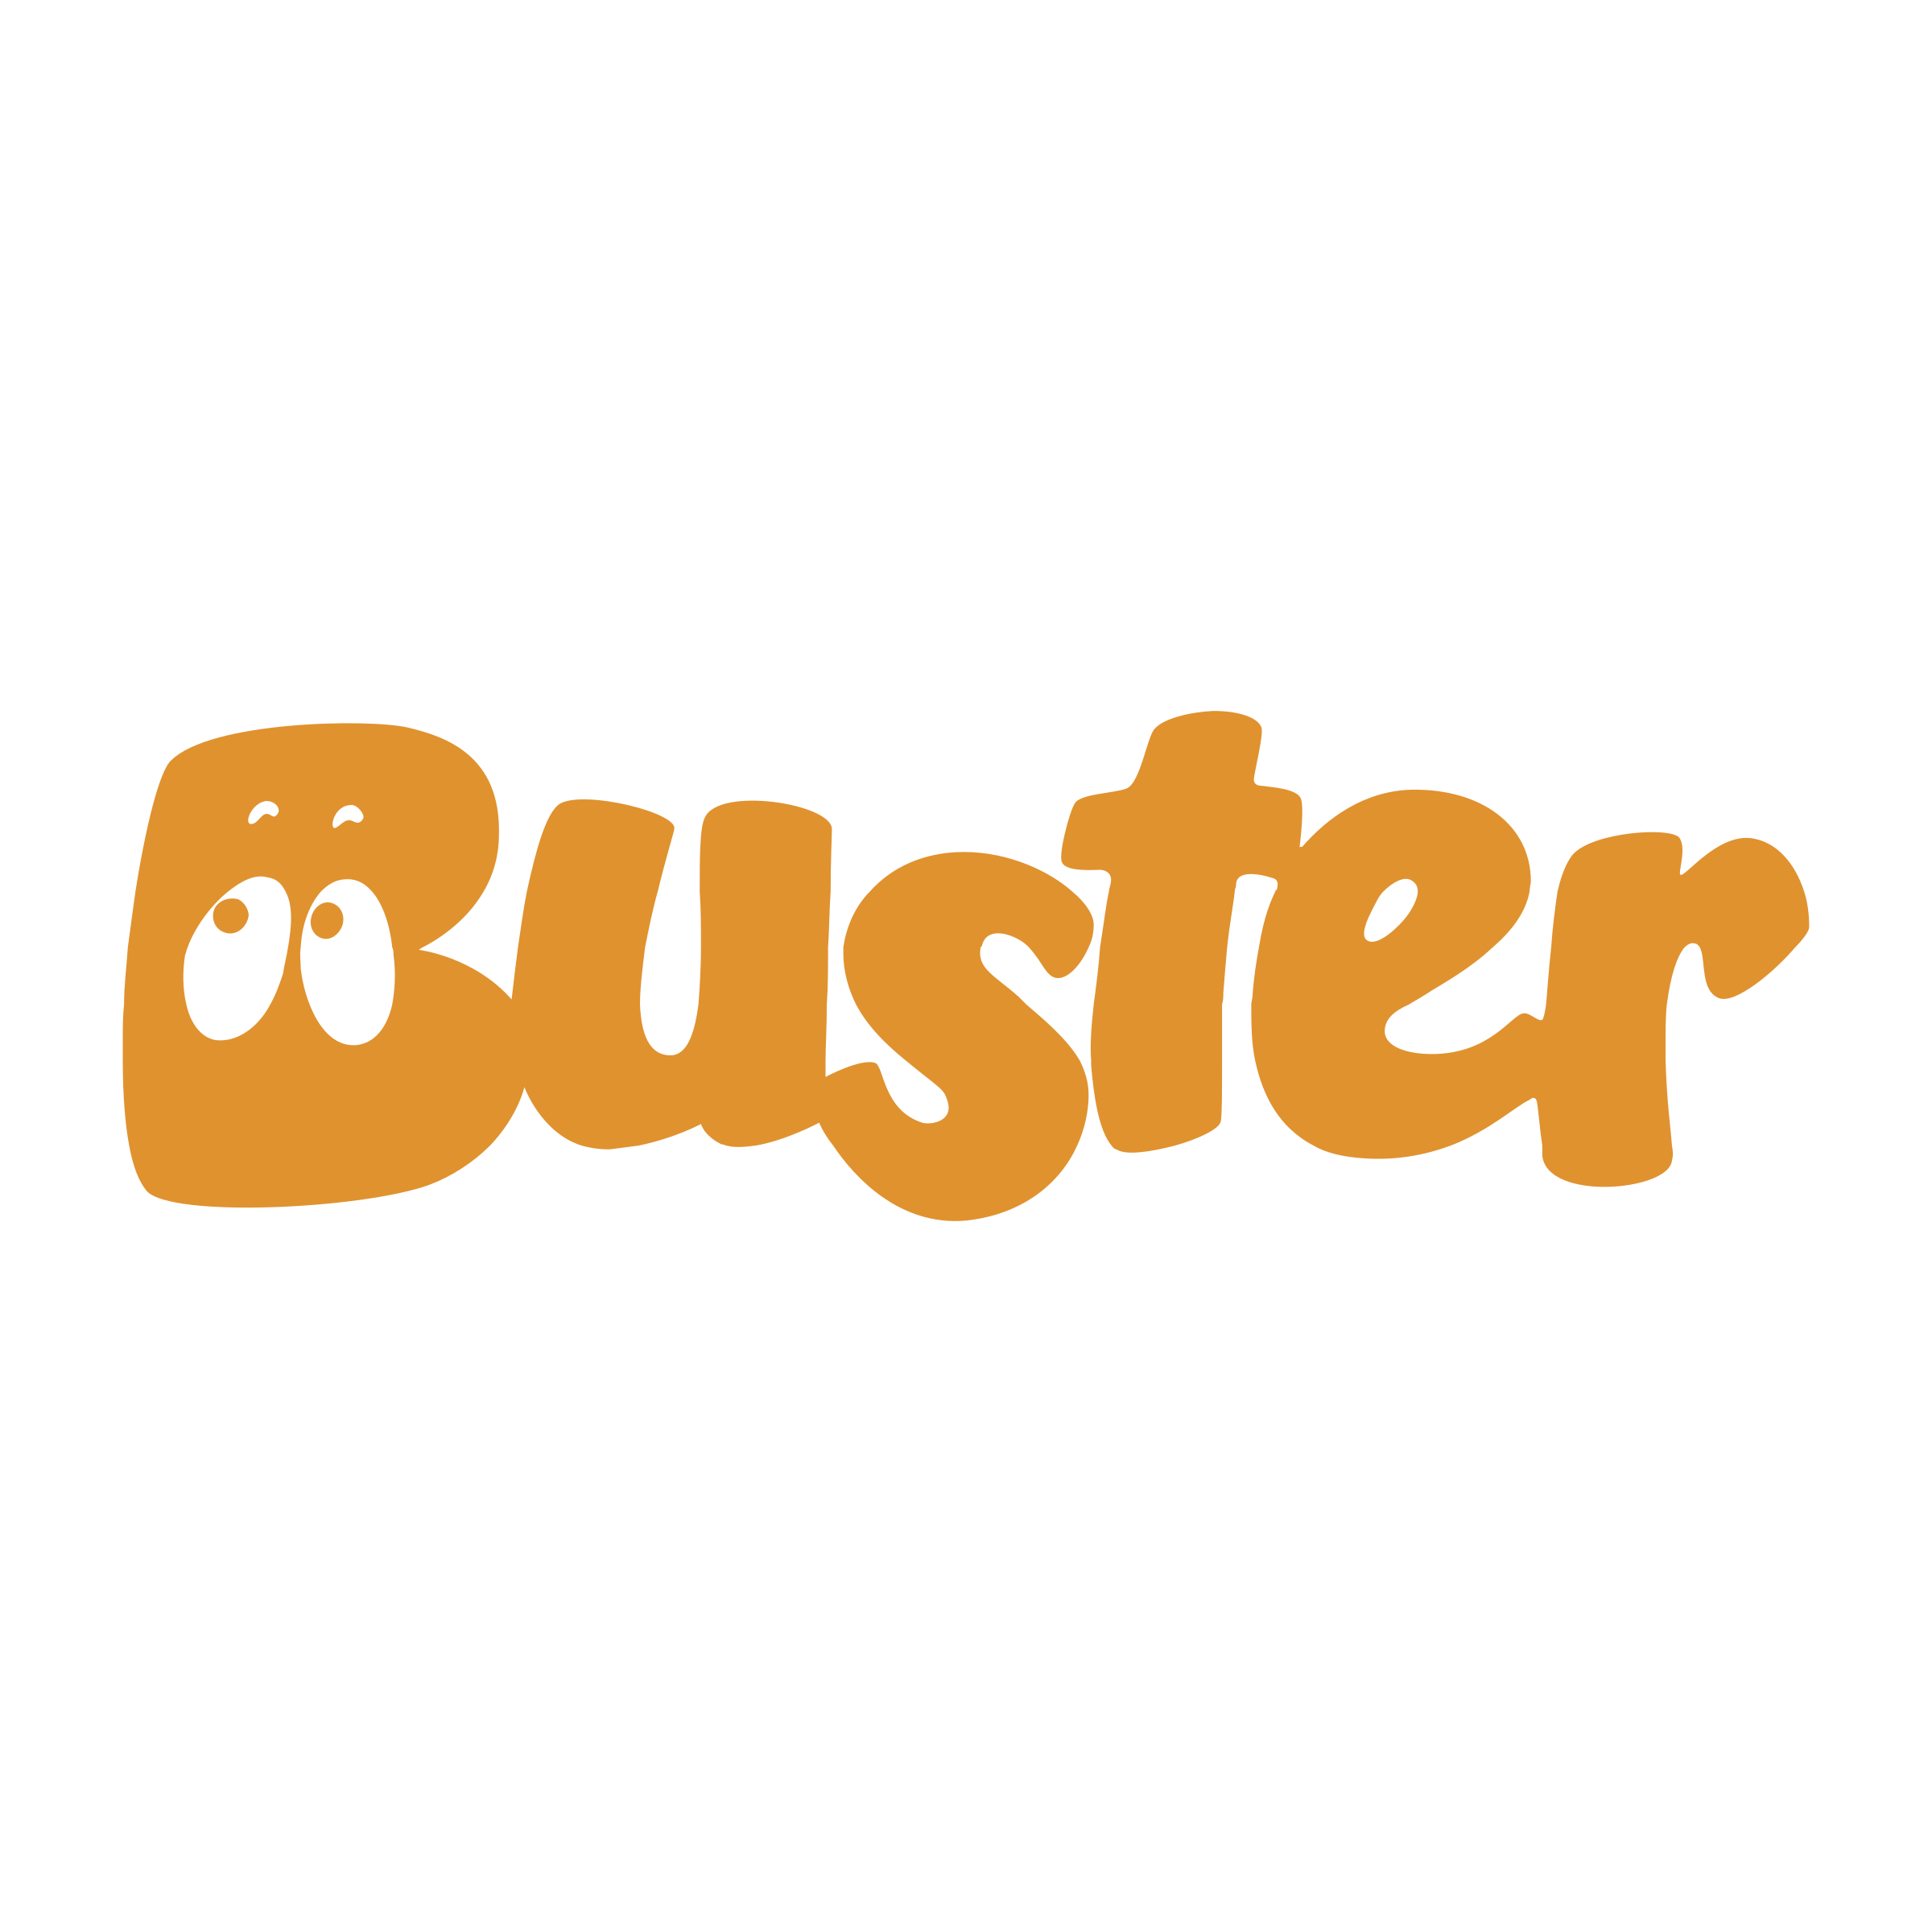 Buster Logo - Buster Logo PNG Transparent & SVG Vector